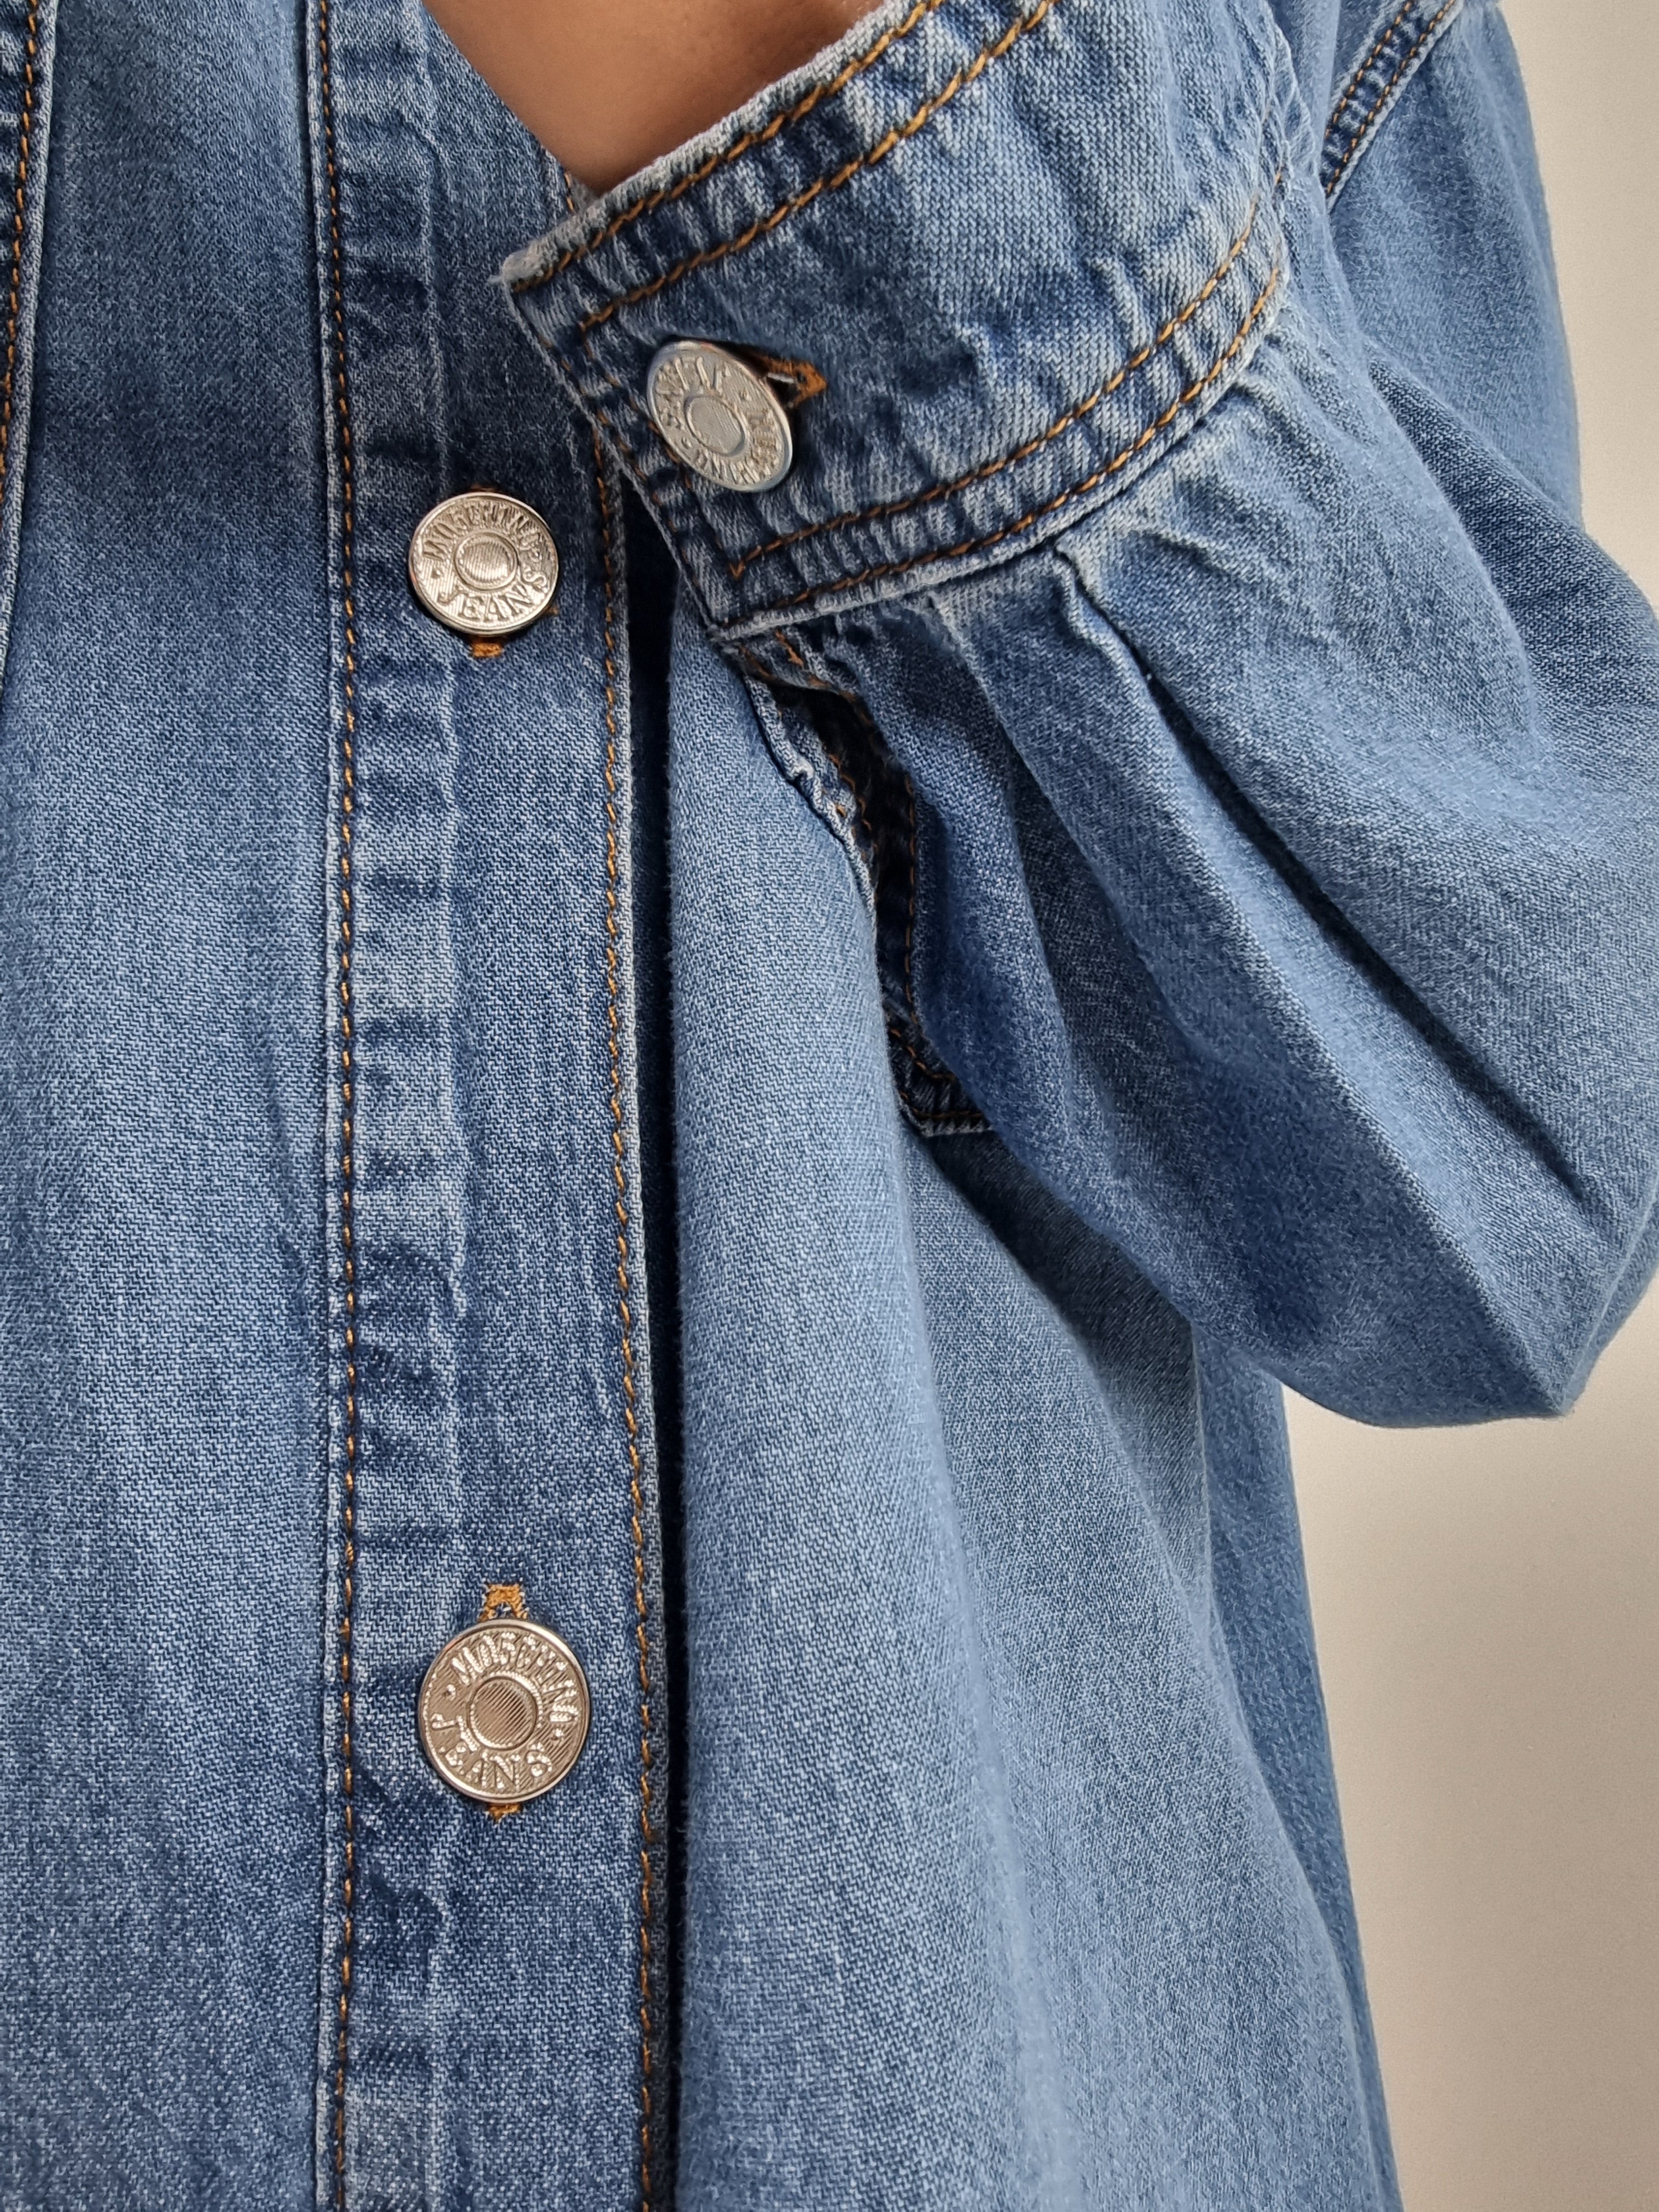 Moschino Jeans – Abito chambray azzurro